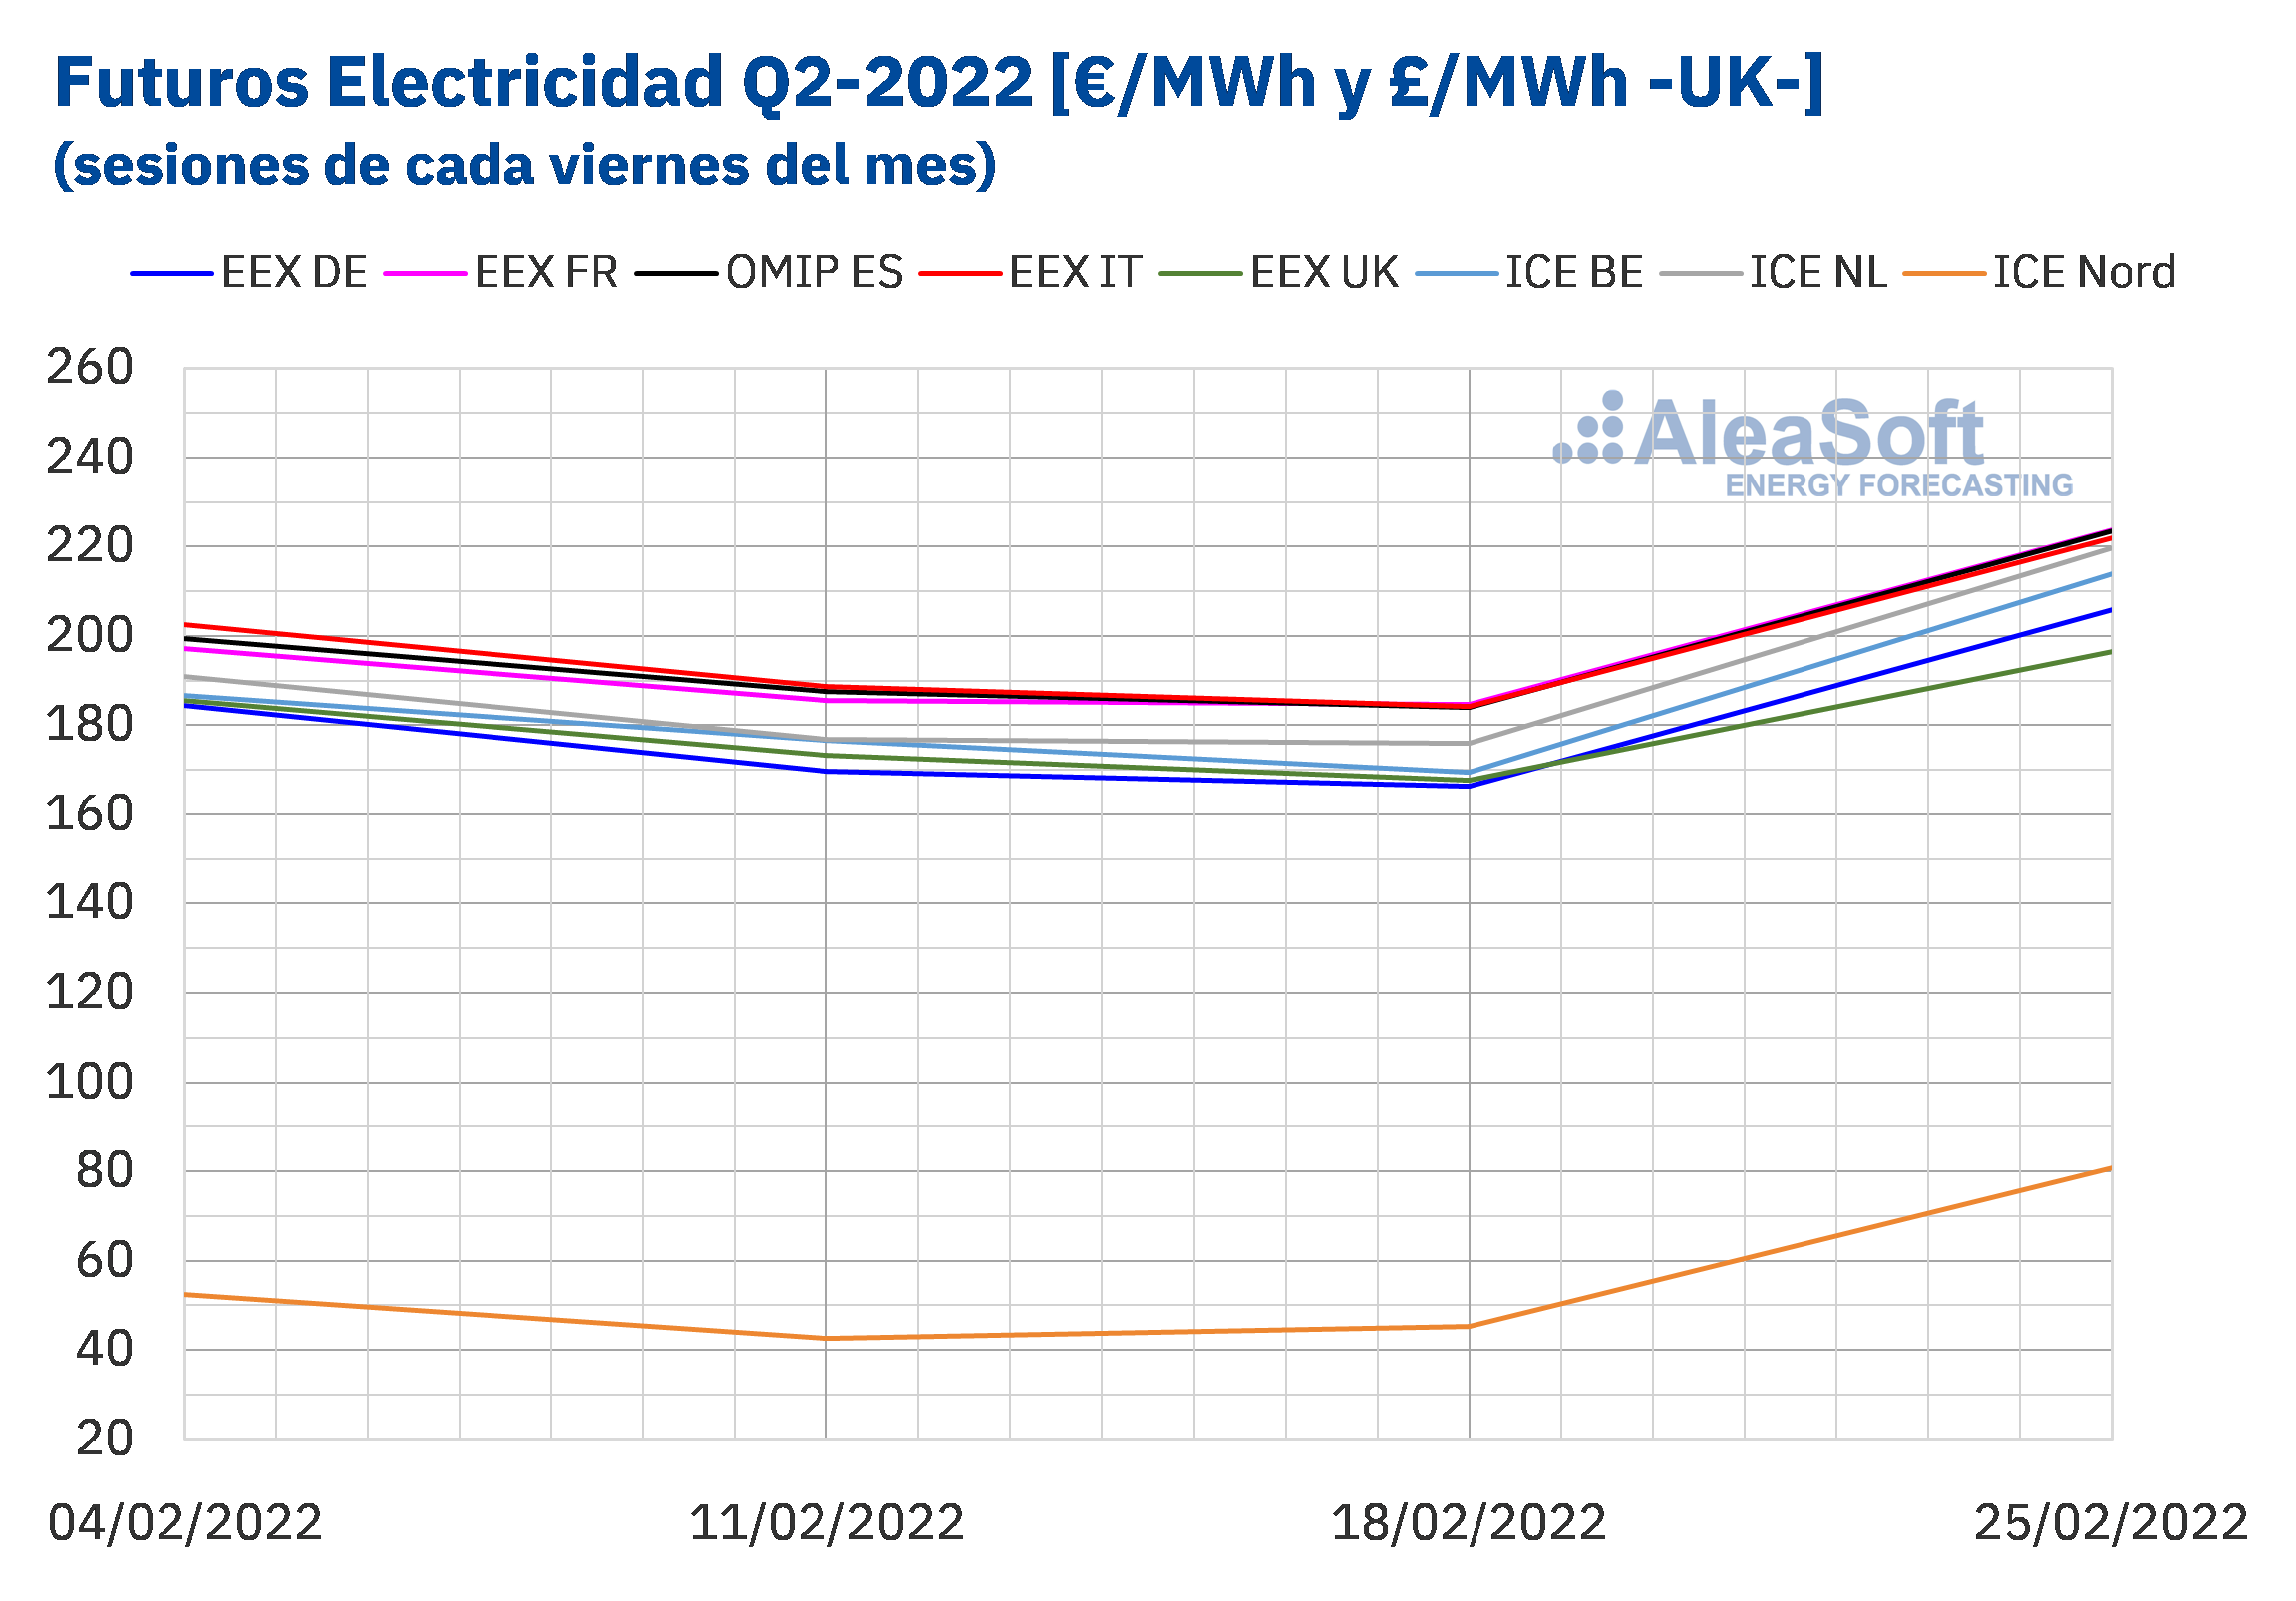 AleaSoft - Precio liquidacion mercados futuros electricidad Europa Q1 Q2 2022